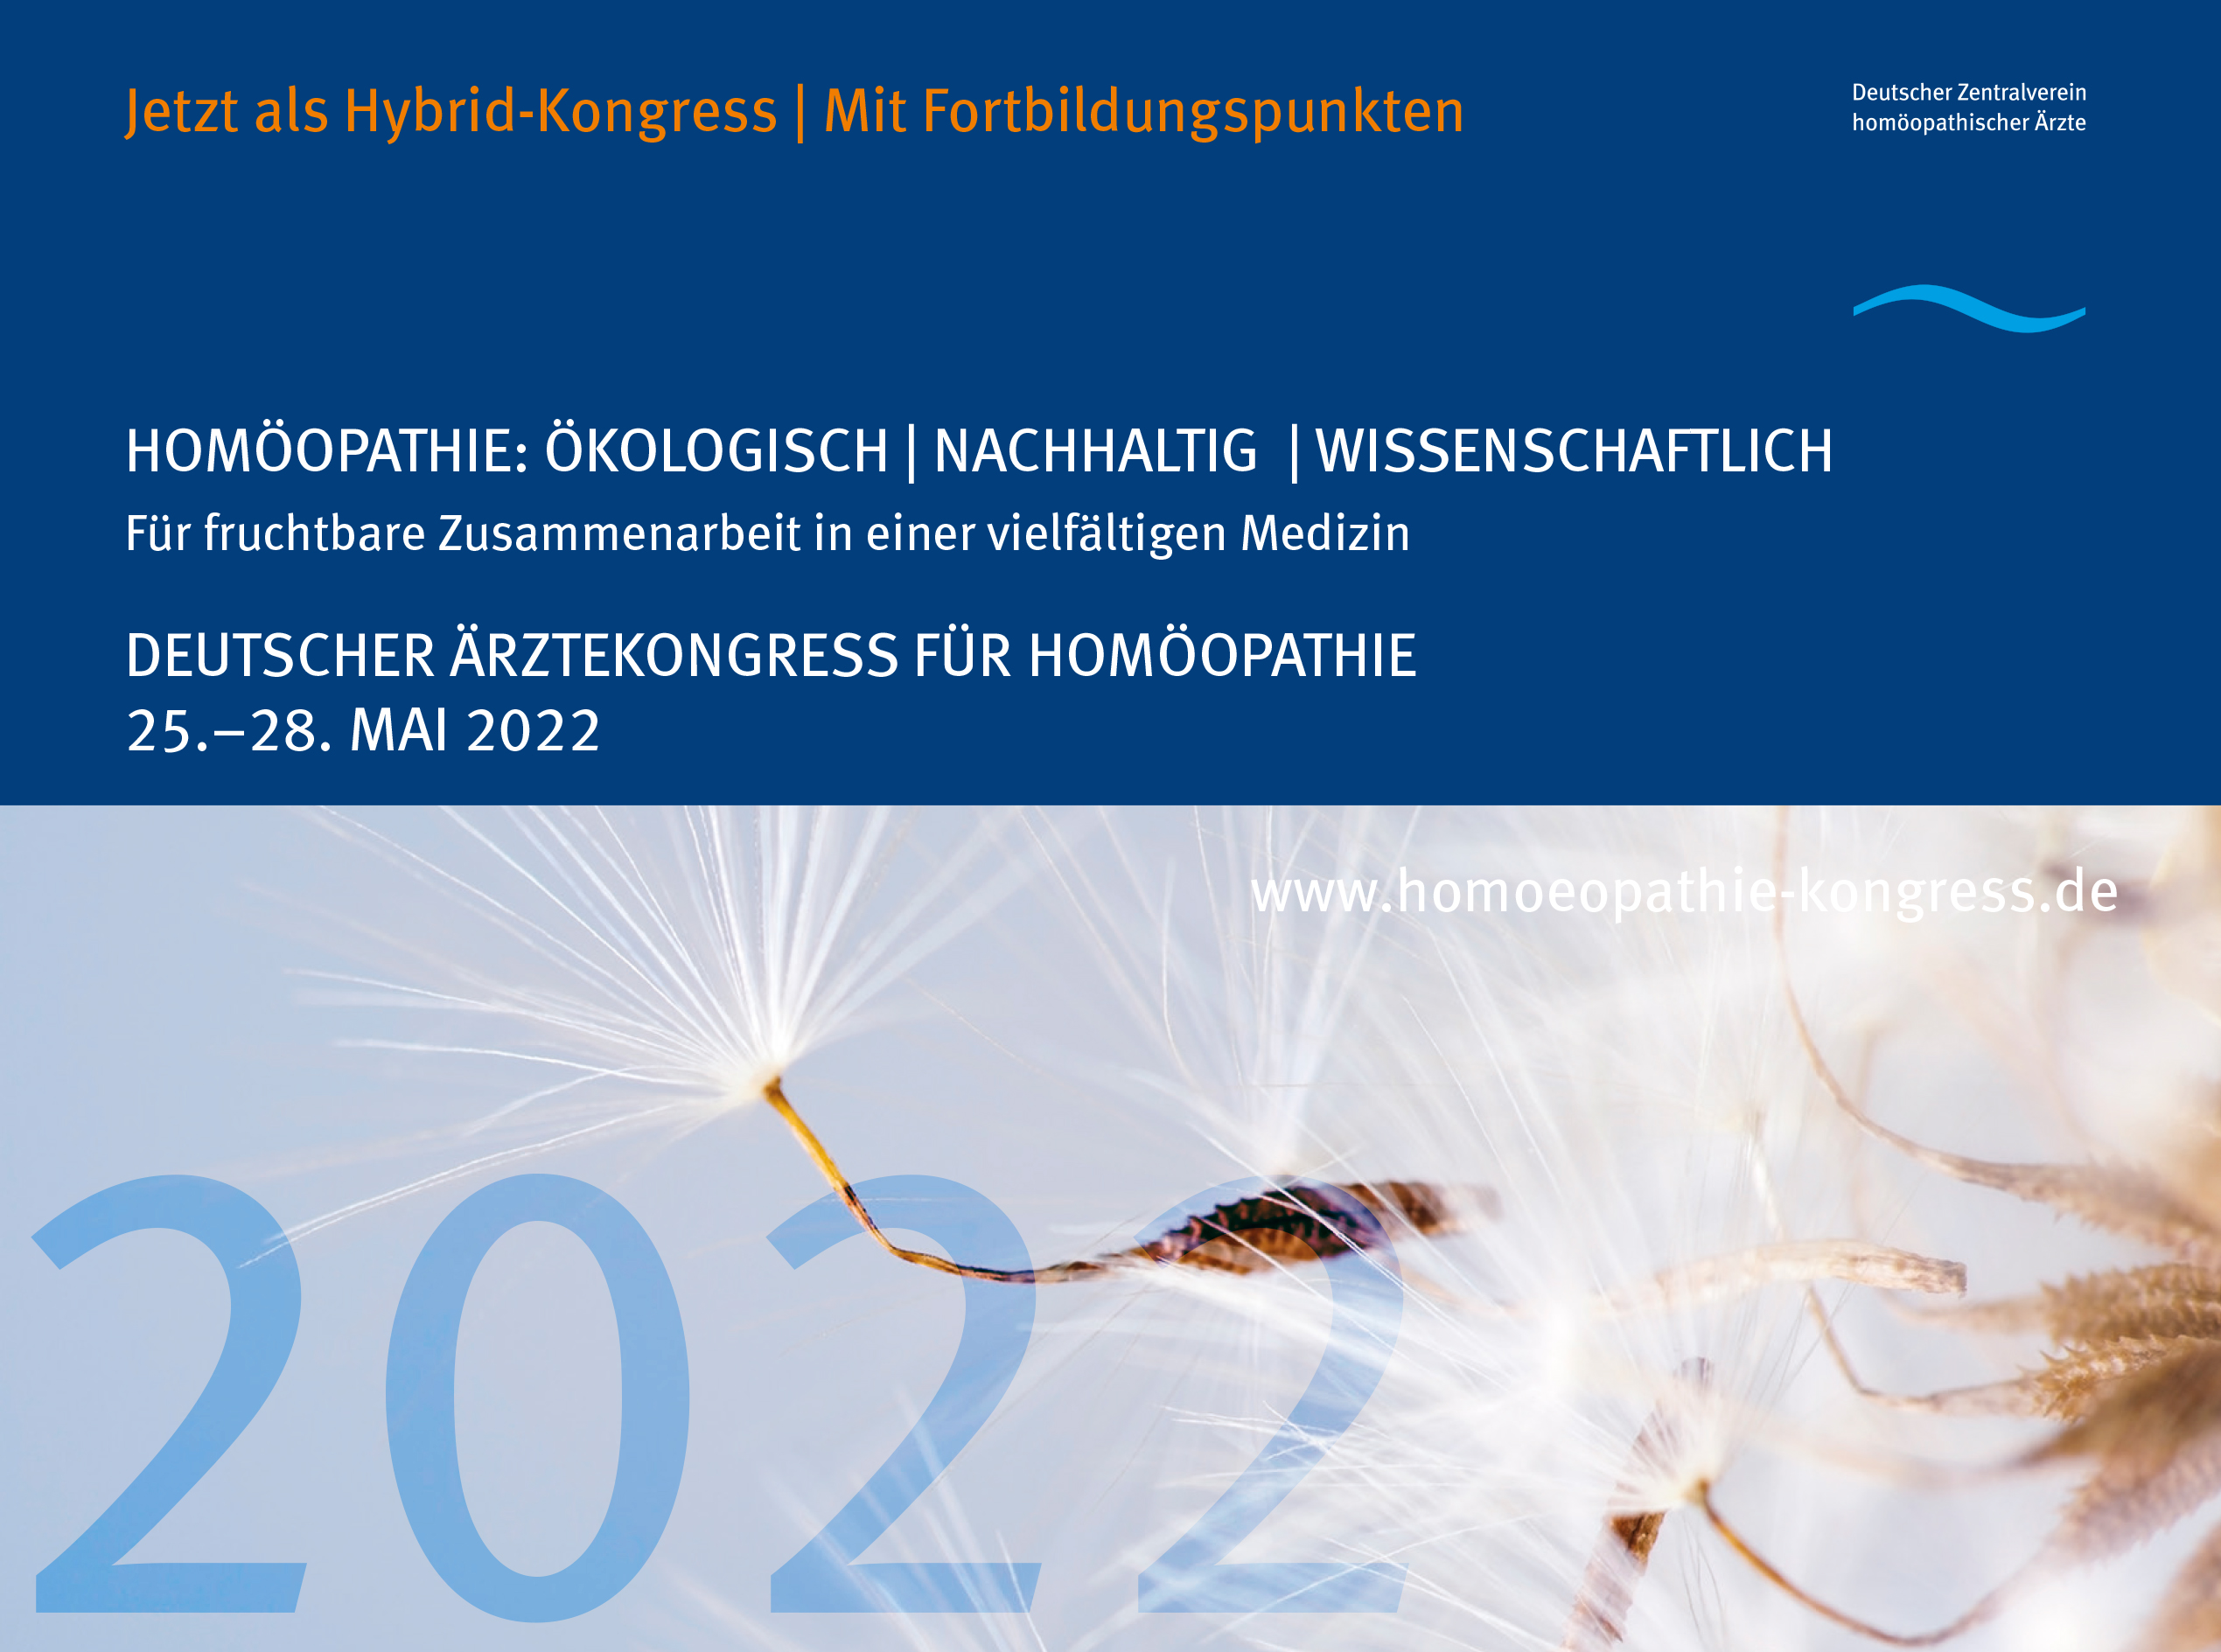 DZVhÄ-Kongress Mai 22: Homöopathie-Forschung in der Praxis